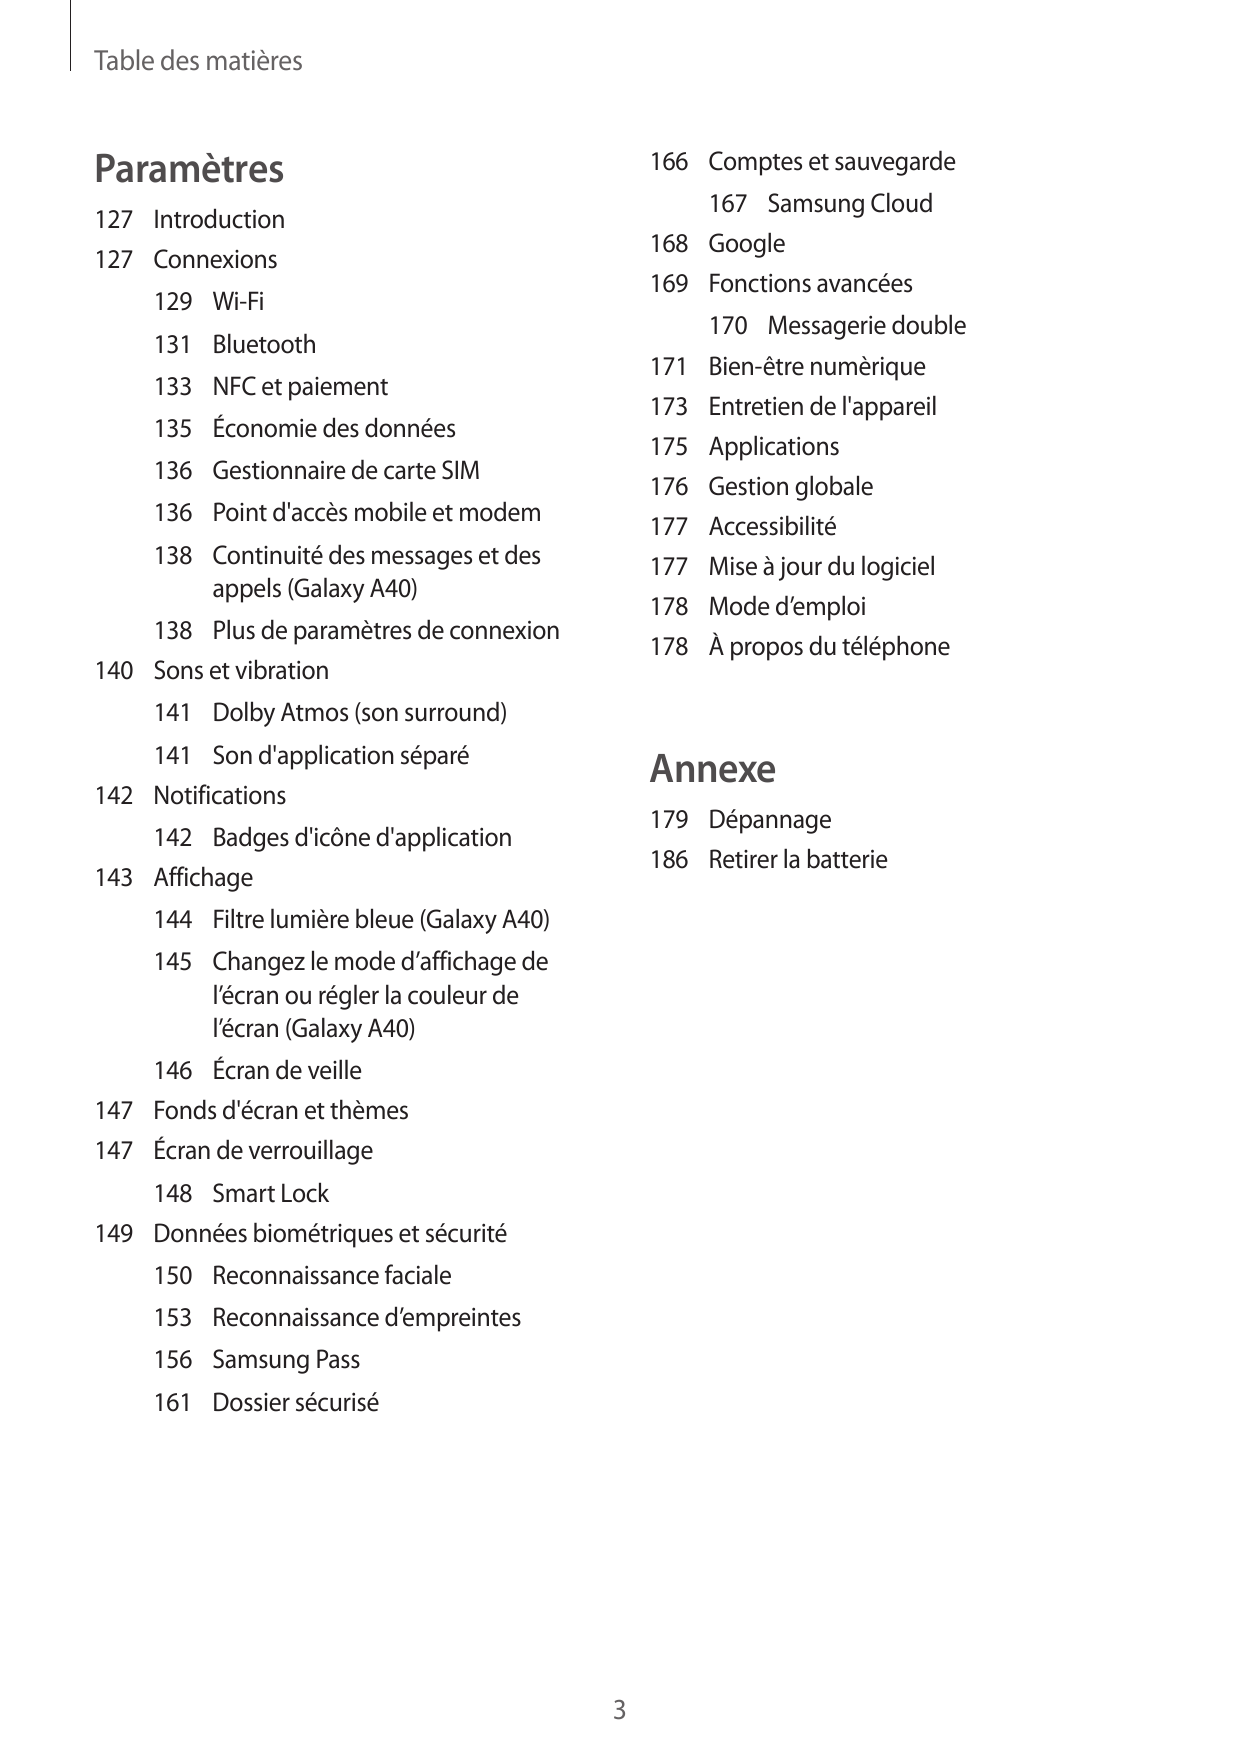 Table des matièresParamètres166 Comptes et sauvegarde167 Samsung Cloud168Google169 Fonctions avancées127Introduction127Connexion